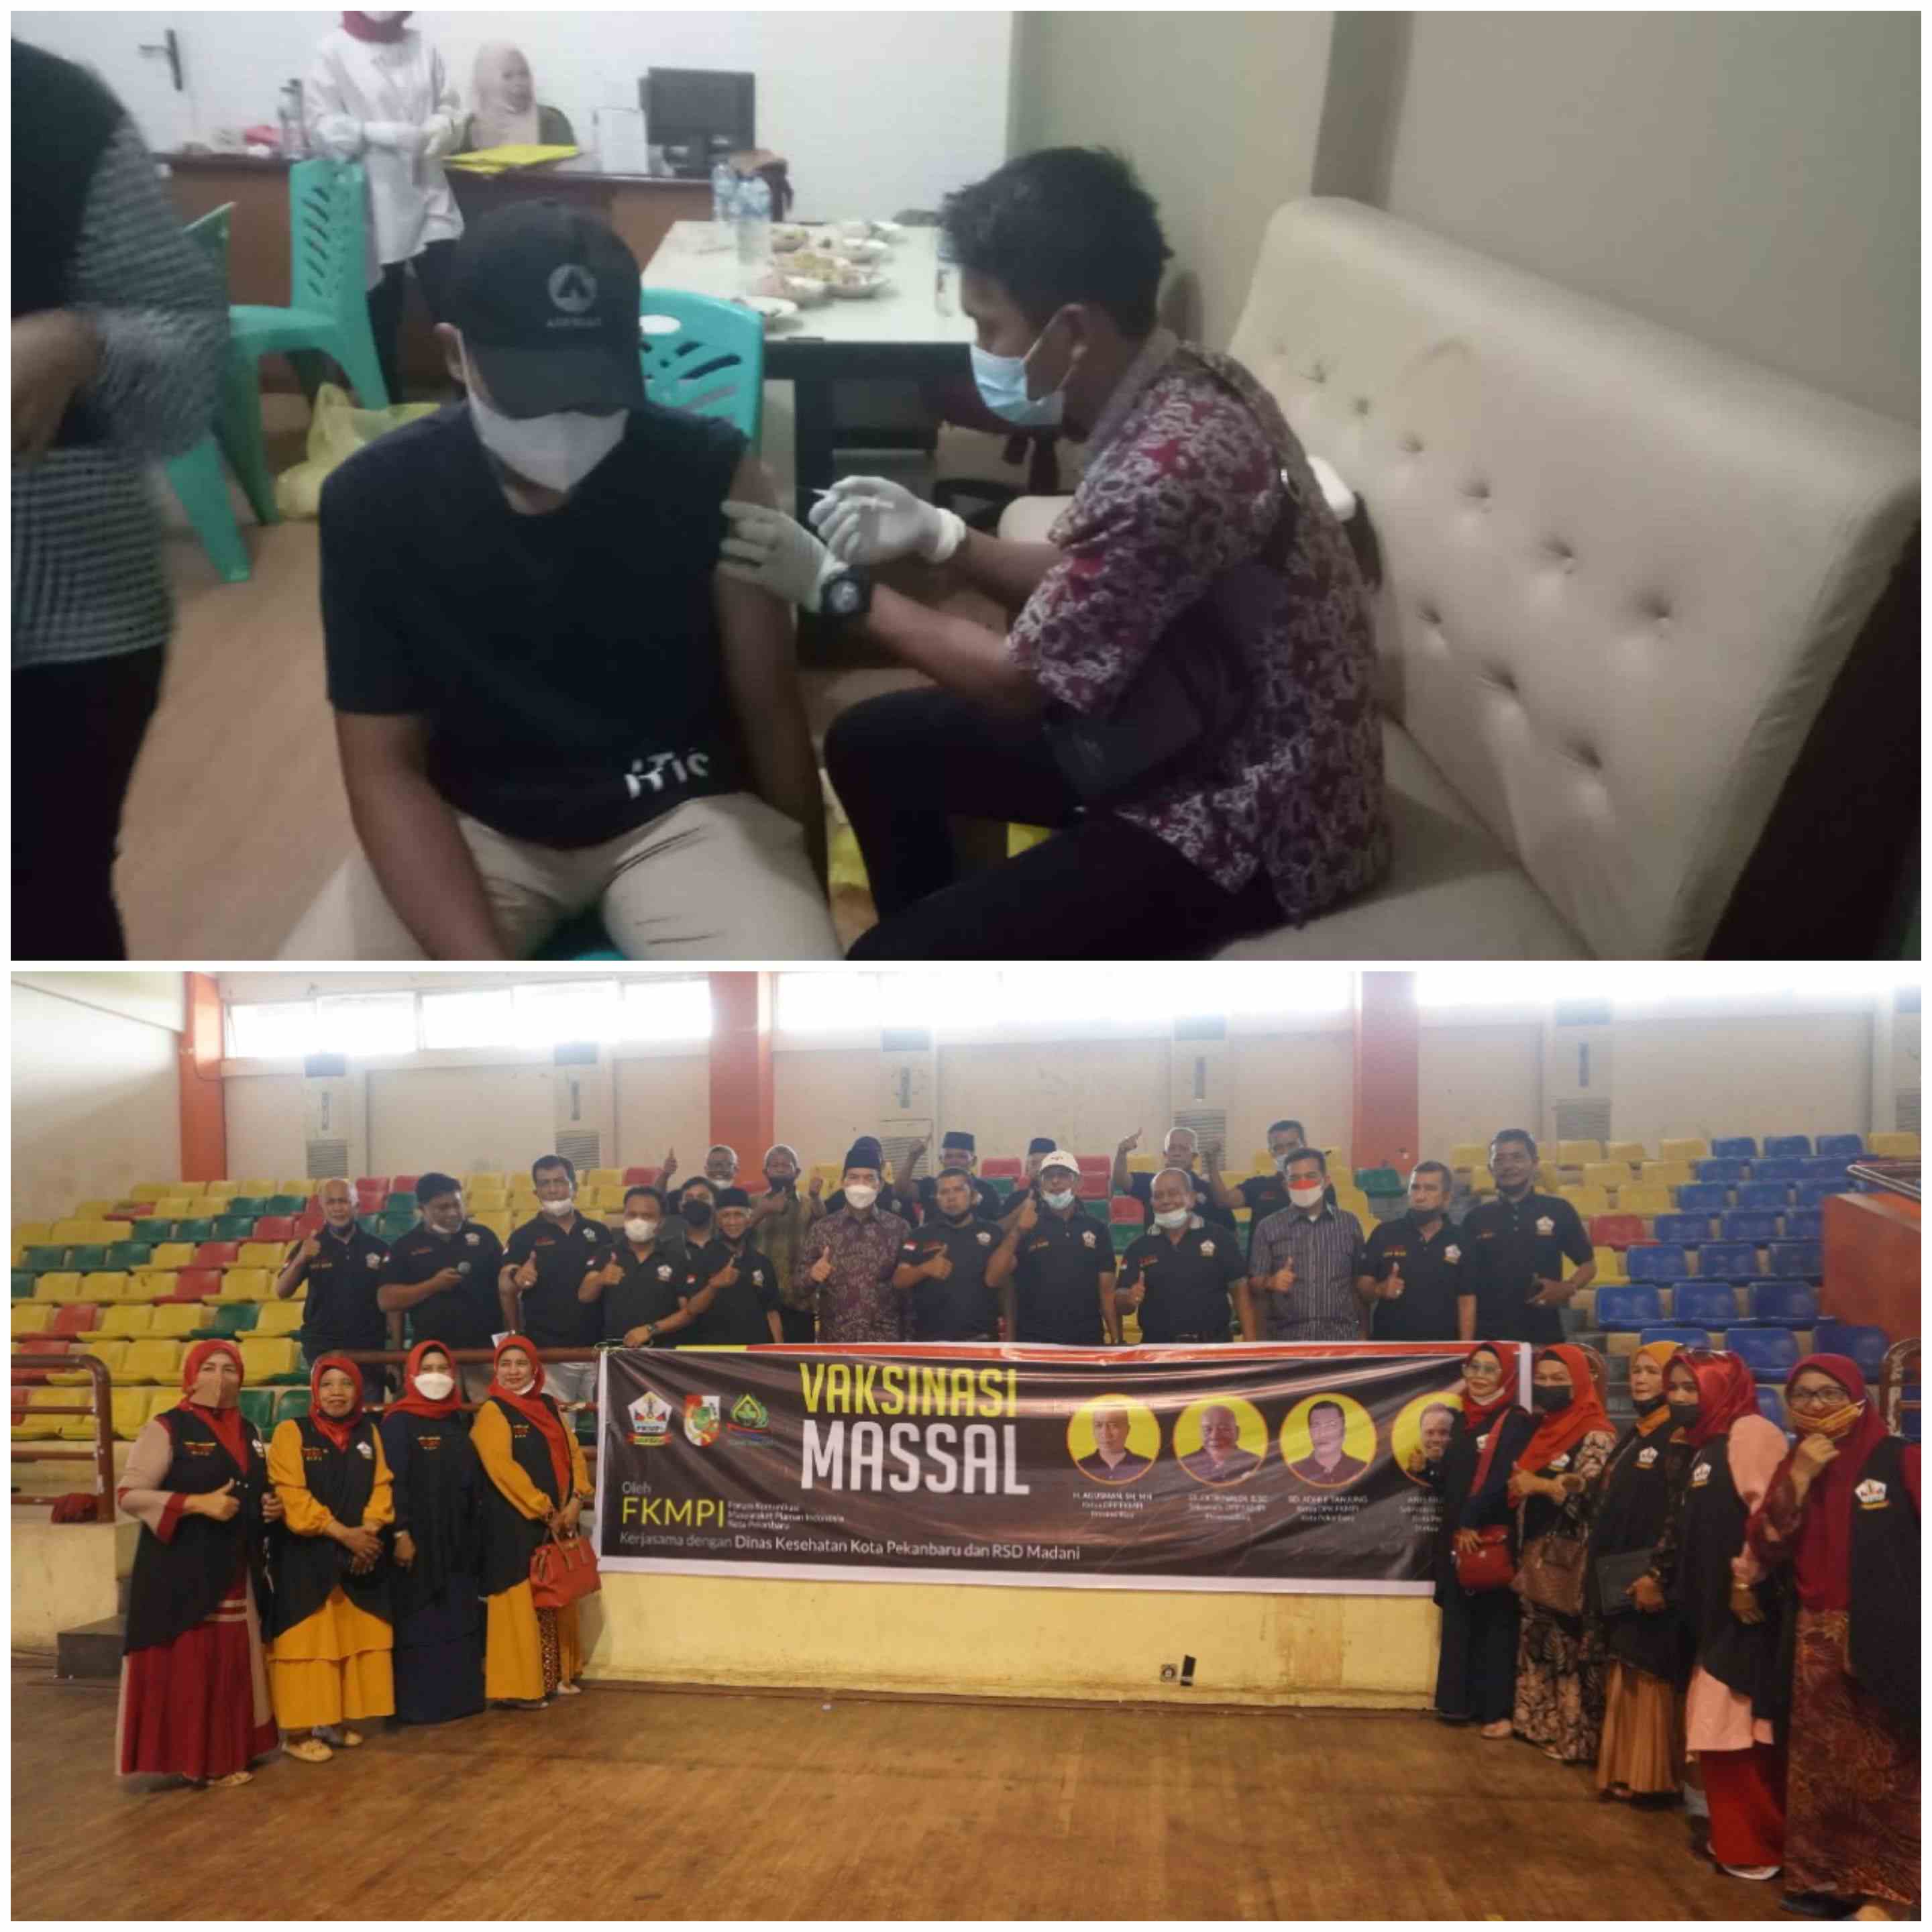 Sukses Dua Kali Vaksinasi Massal, FKMPI Akan Lanjutkan di SMK Telkom Jalan Melati